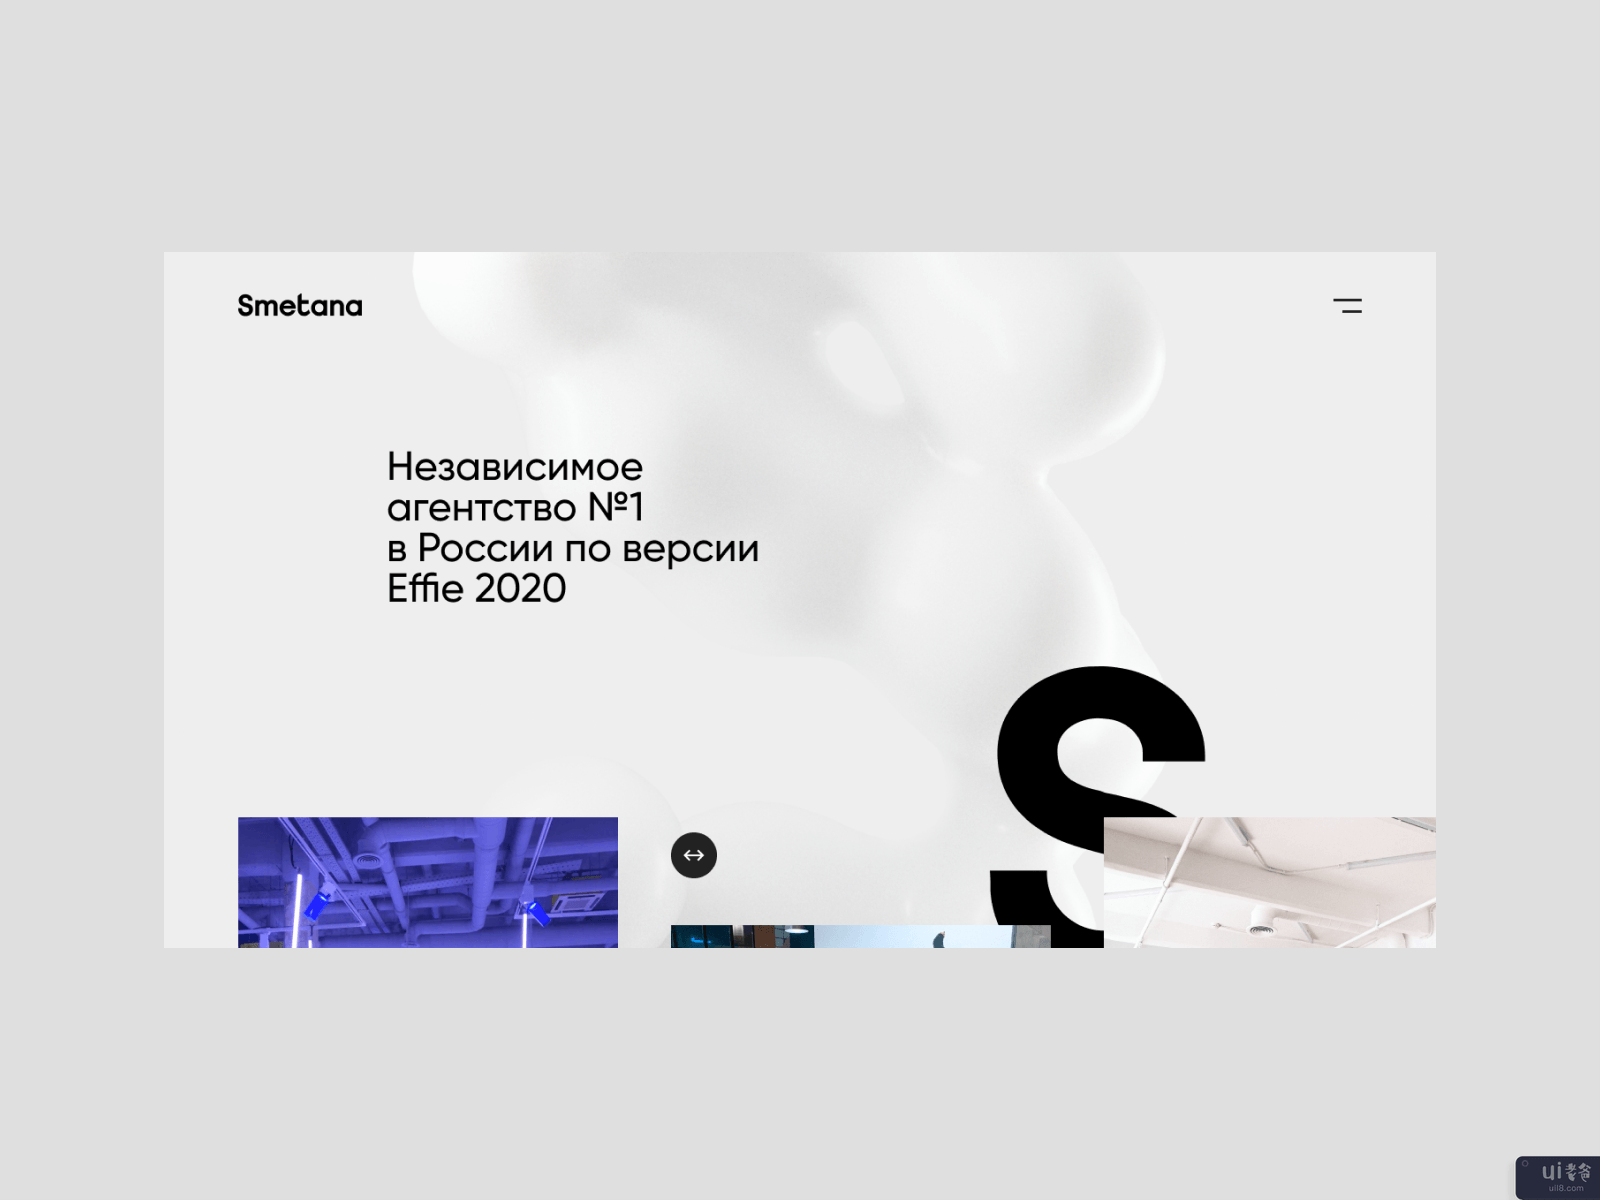 斯梅塔纳网站(Smetana website)插图